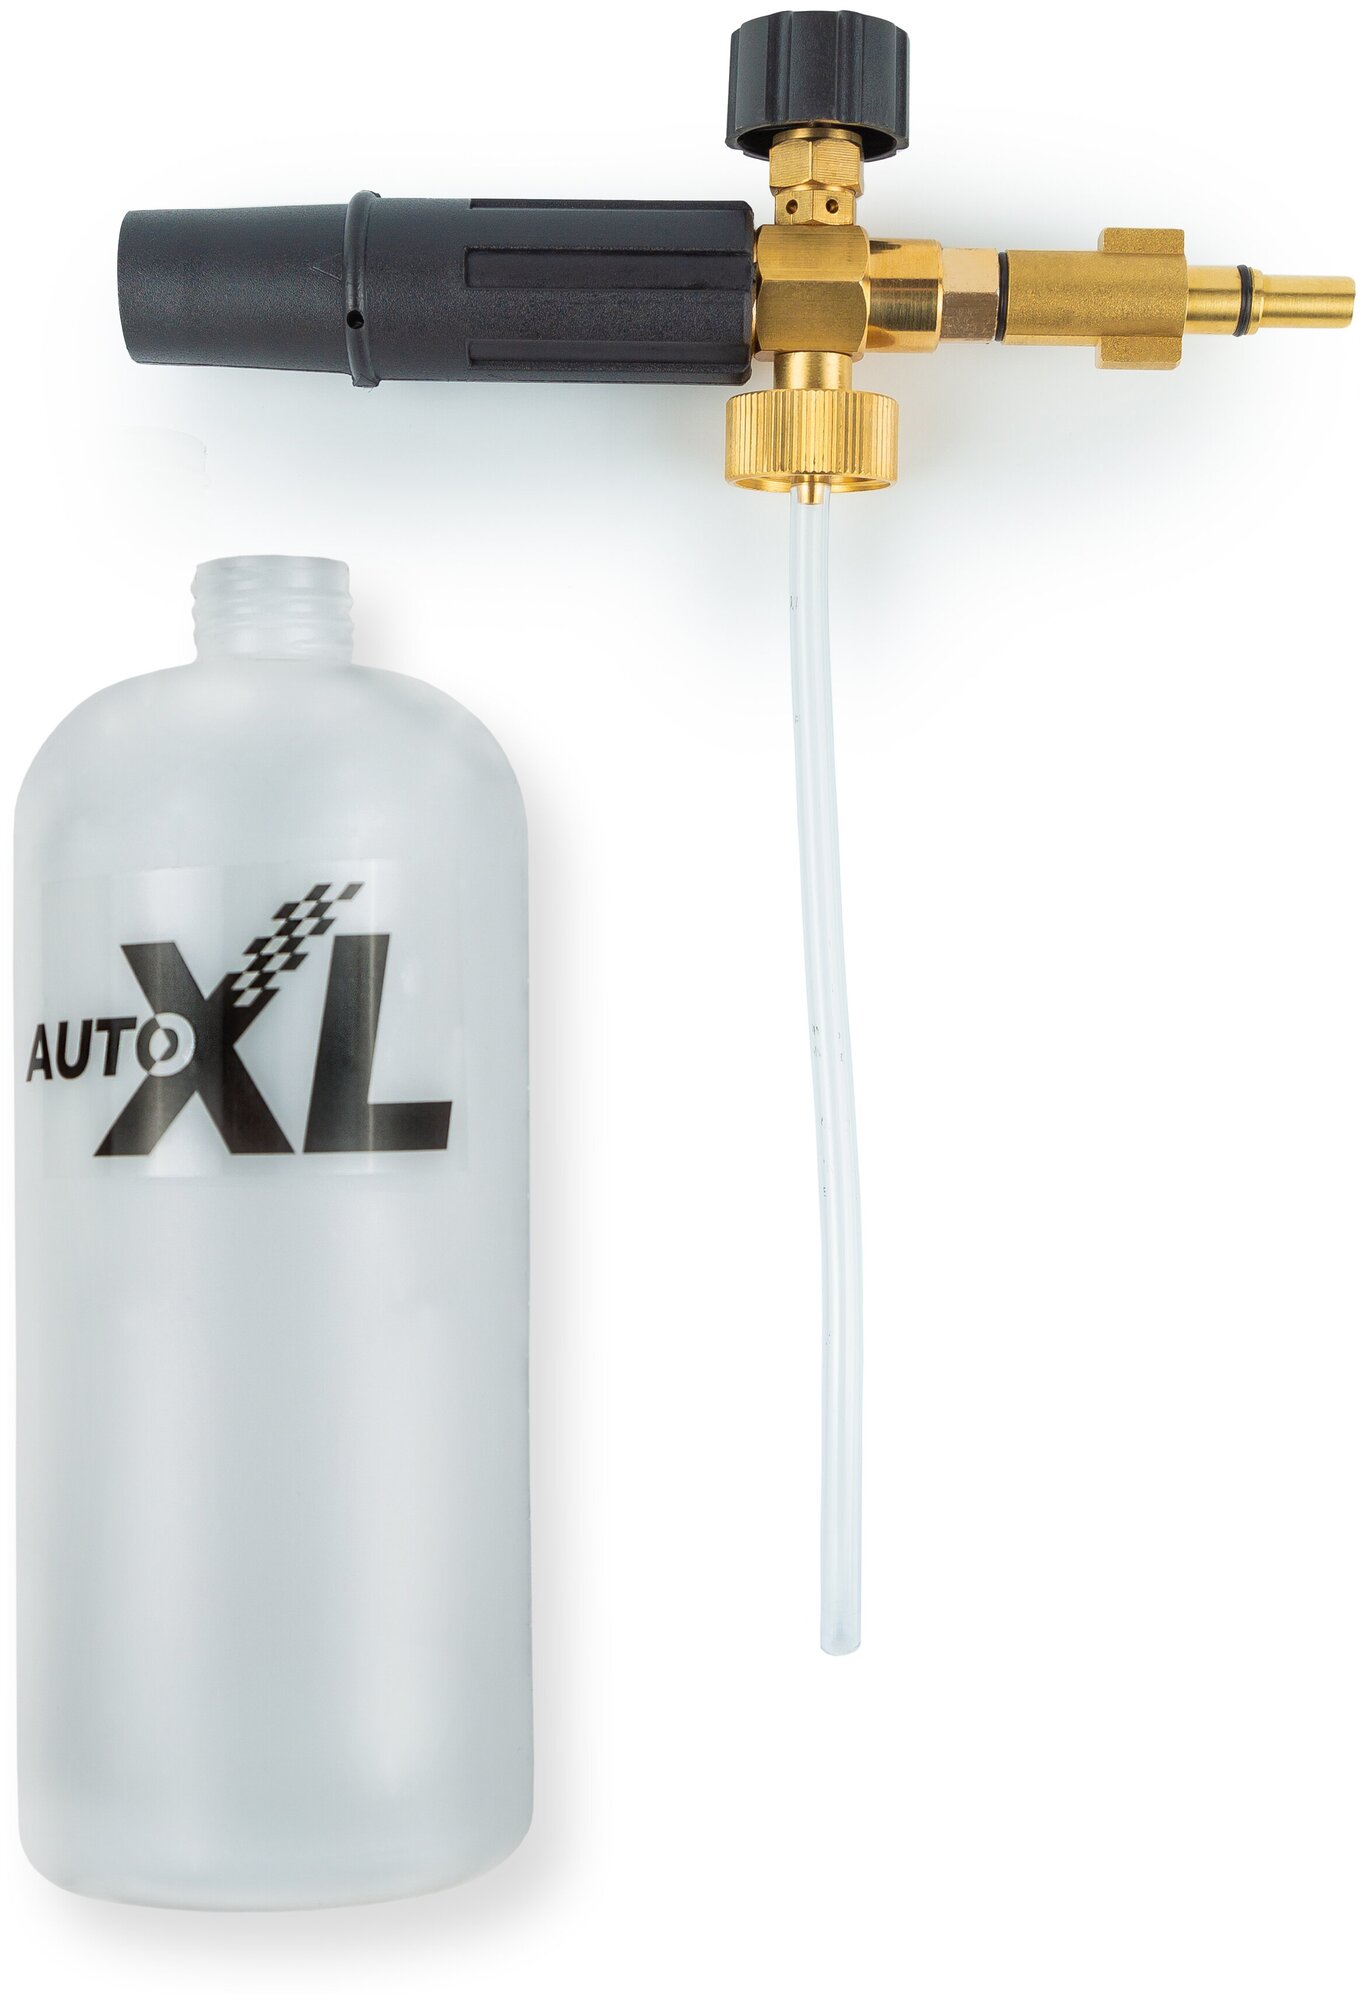 Пенообразователь AutoXL Foam B, для моек высокого давления Bosch, Black&Decker - фотография № 12